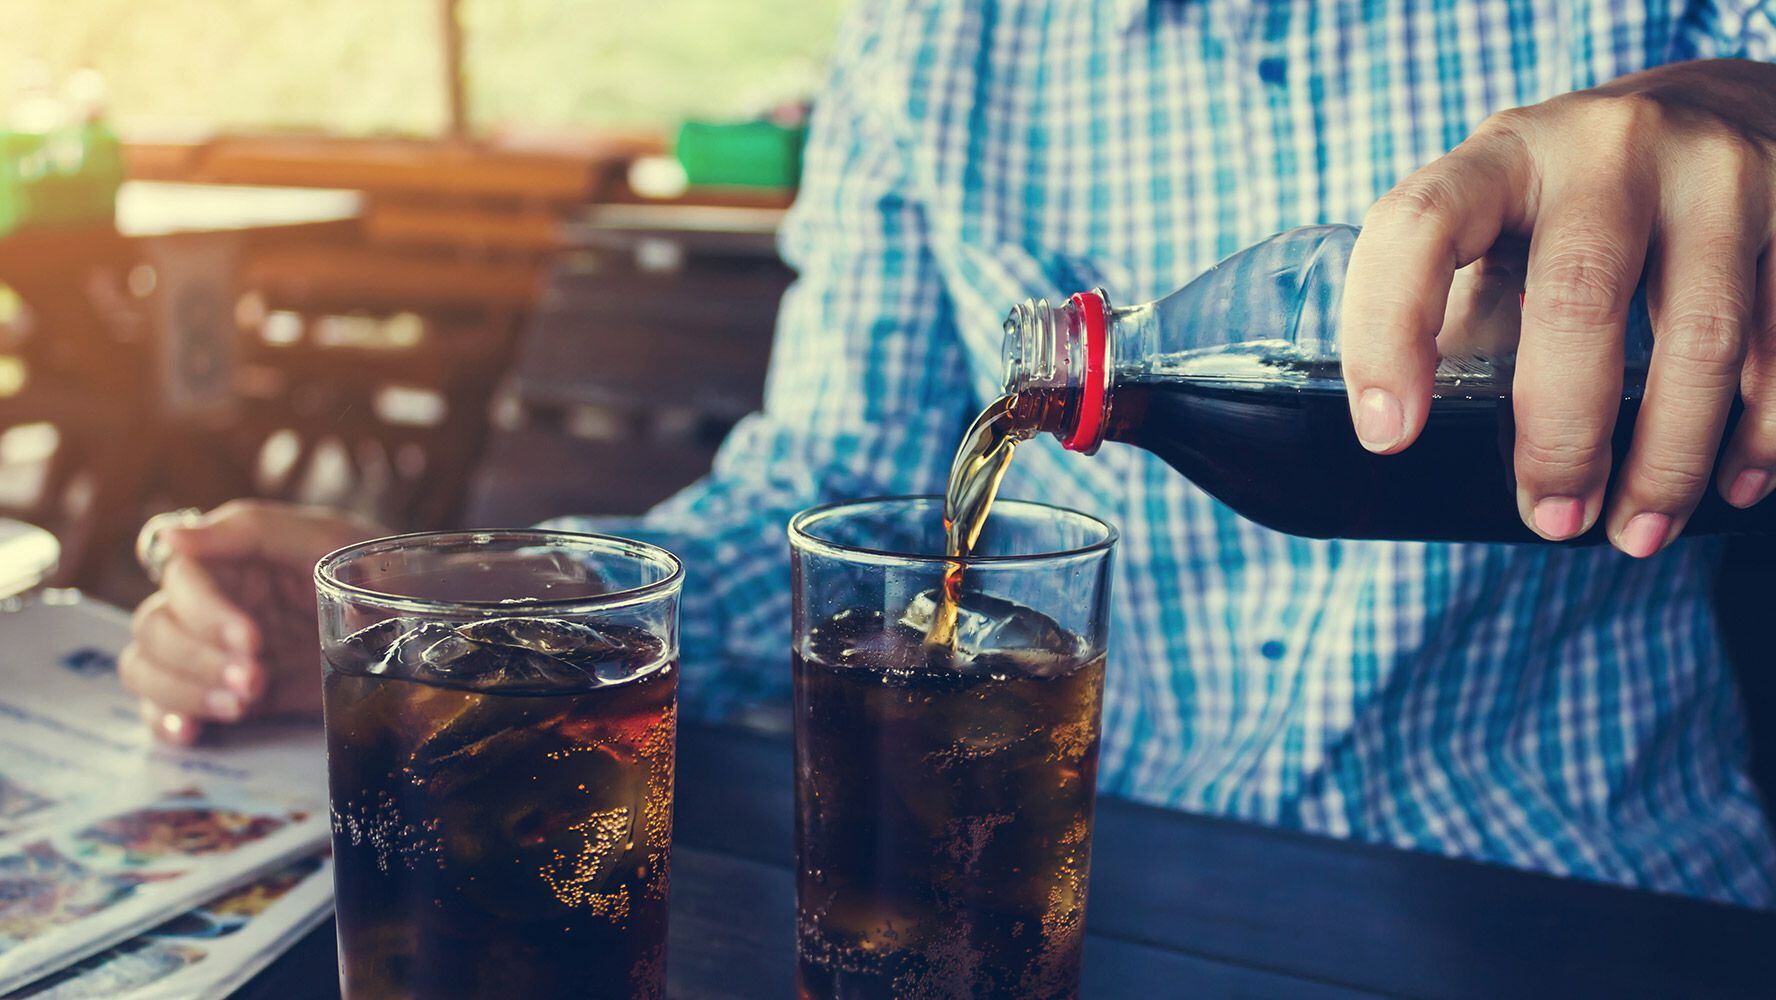 El refresco es una bebida azucarada que suele consumirse cotidianamente, aunque eso puede tener consecuencias para la salud. (Foto: Shutterstock).